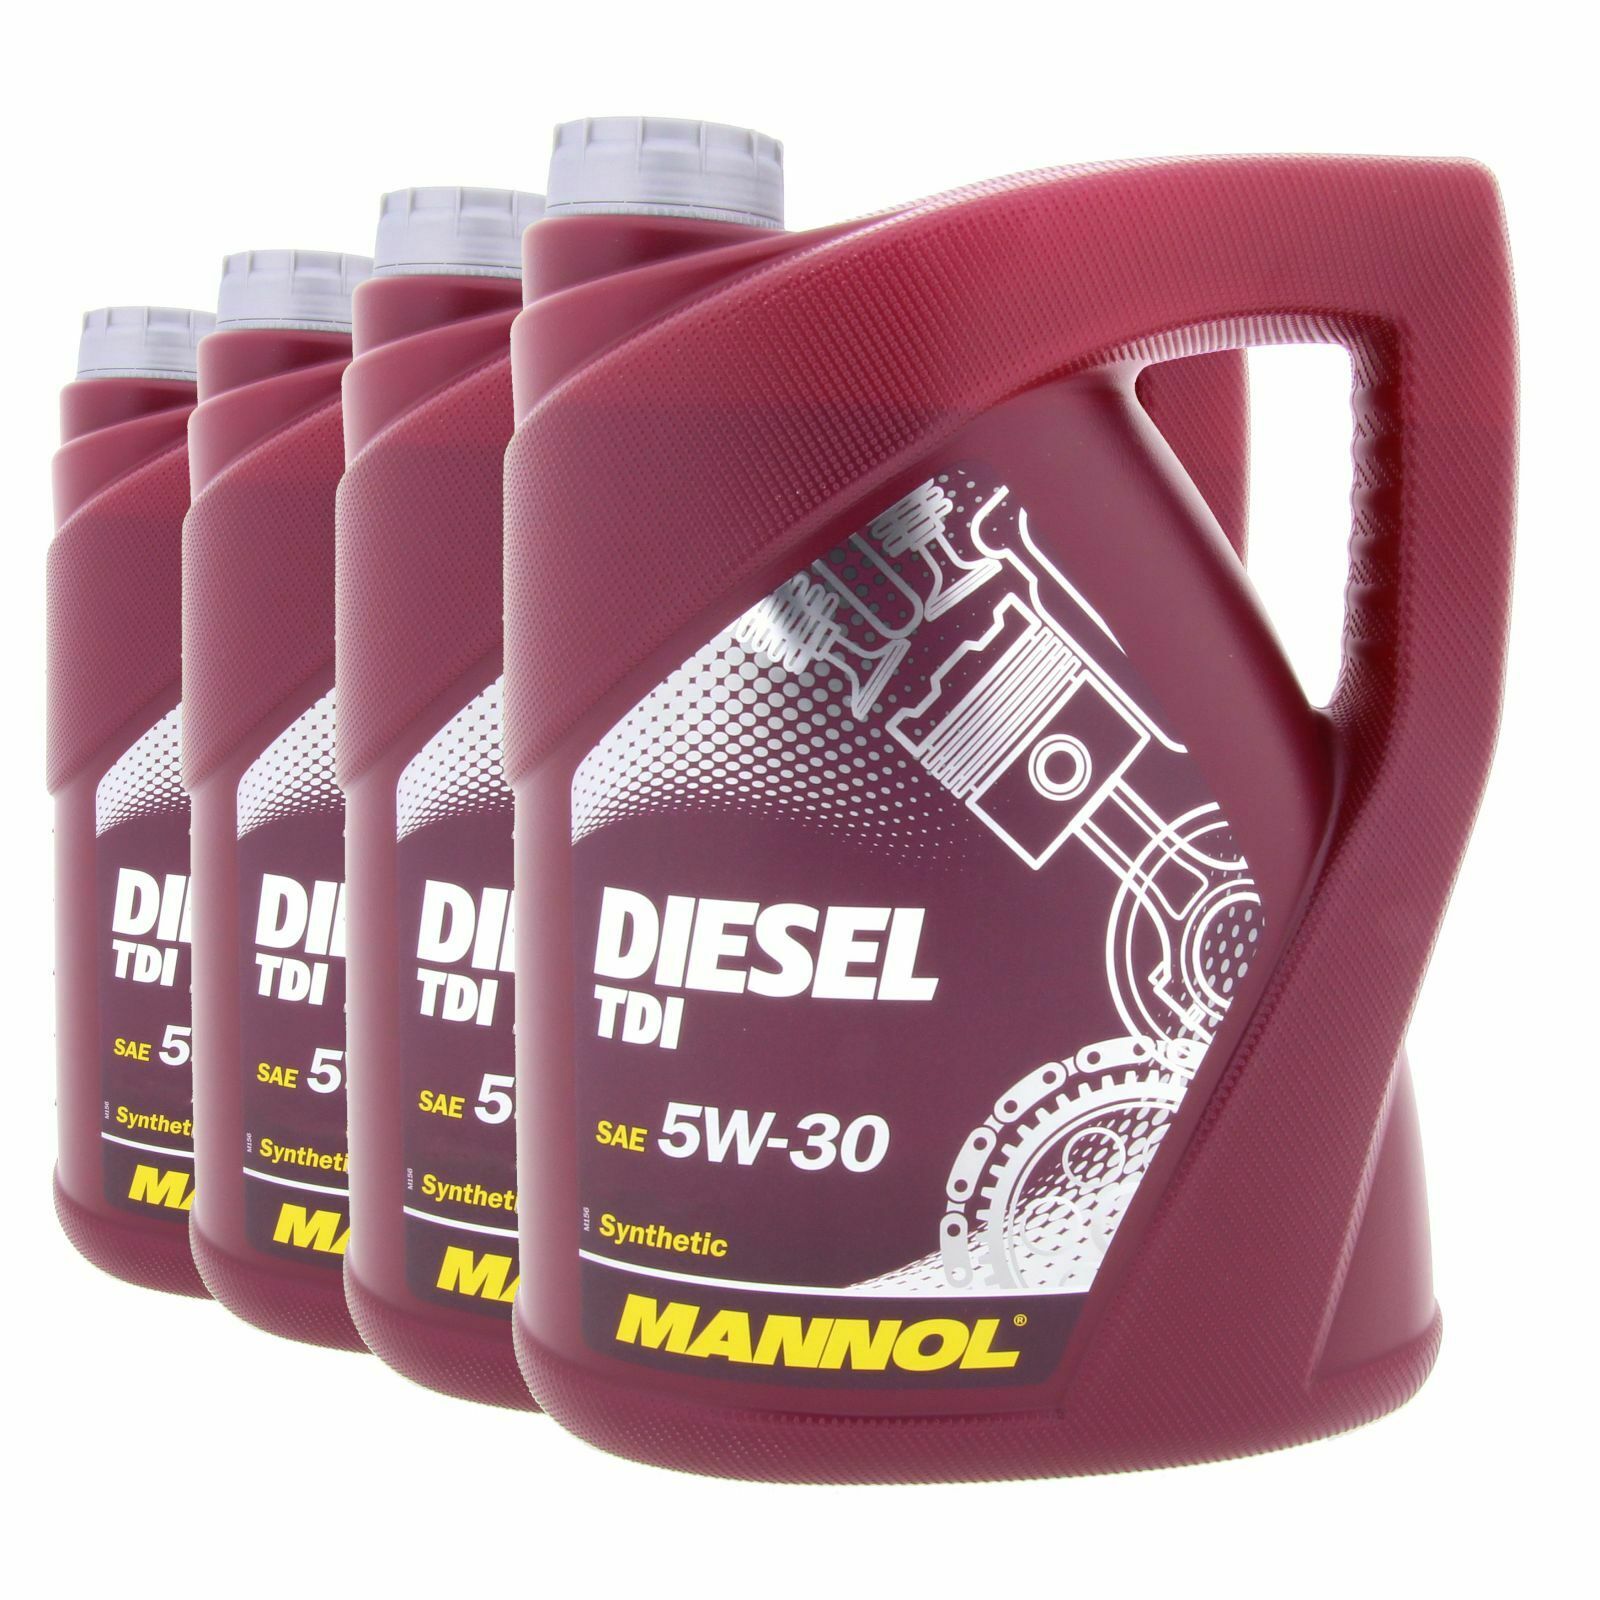 20 (4x 5 Liter) Liter MANNOL Diesel TDI 5W-30 BMW LL-04 MB 229.51VW 505.01 505.00 API SN CH-4